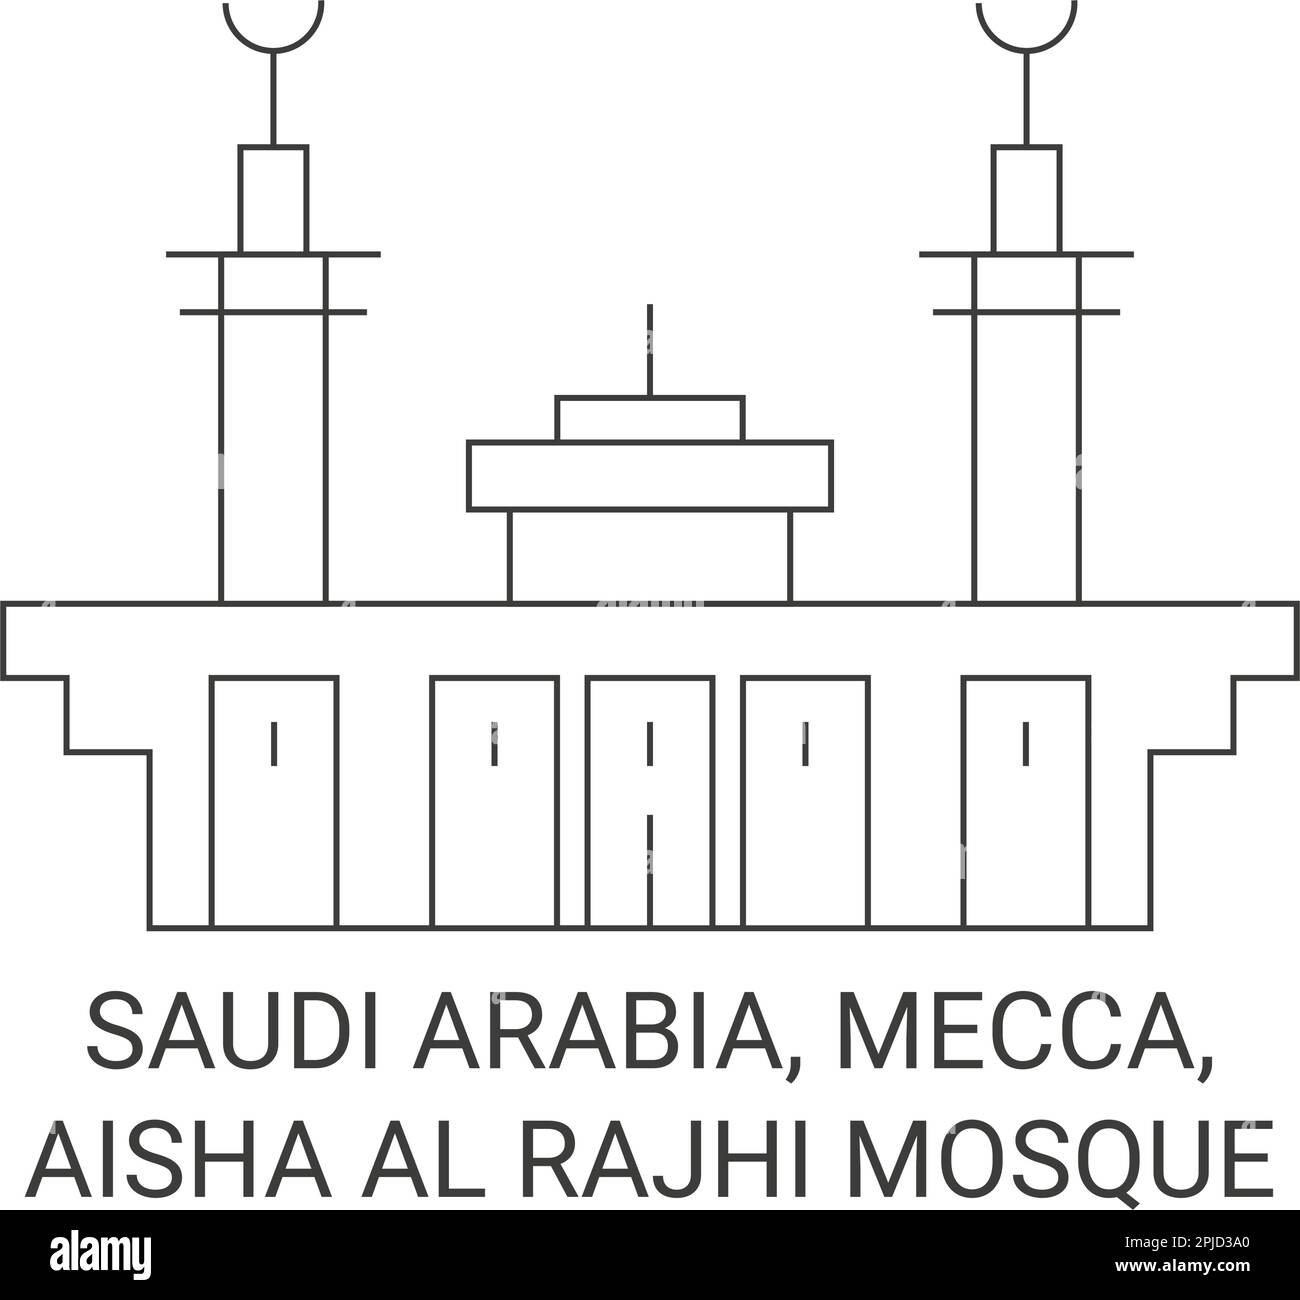 Saudi Arabia, Mecca, Aisha Al Rajhi Mosque travel landmark vector ...